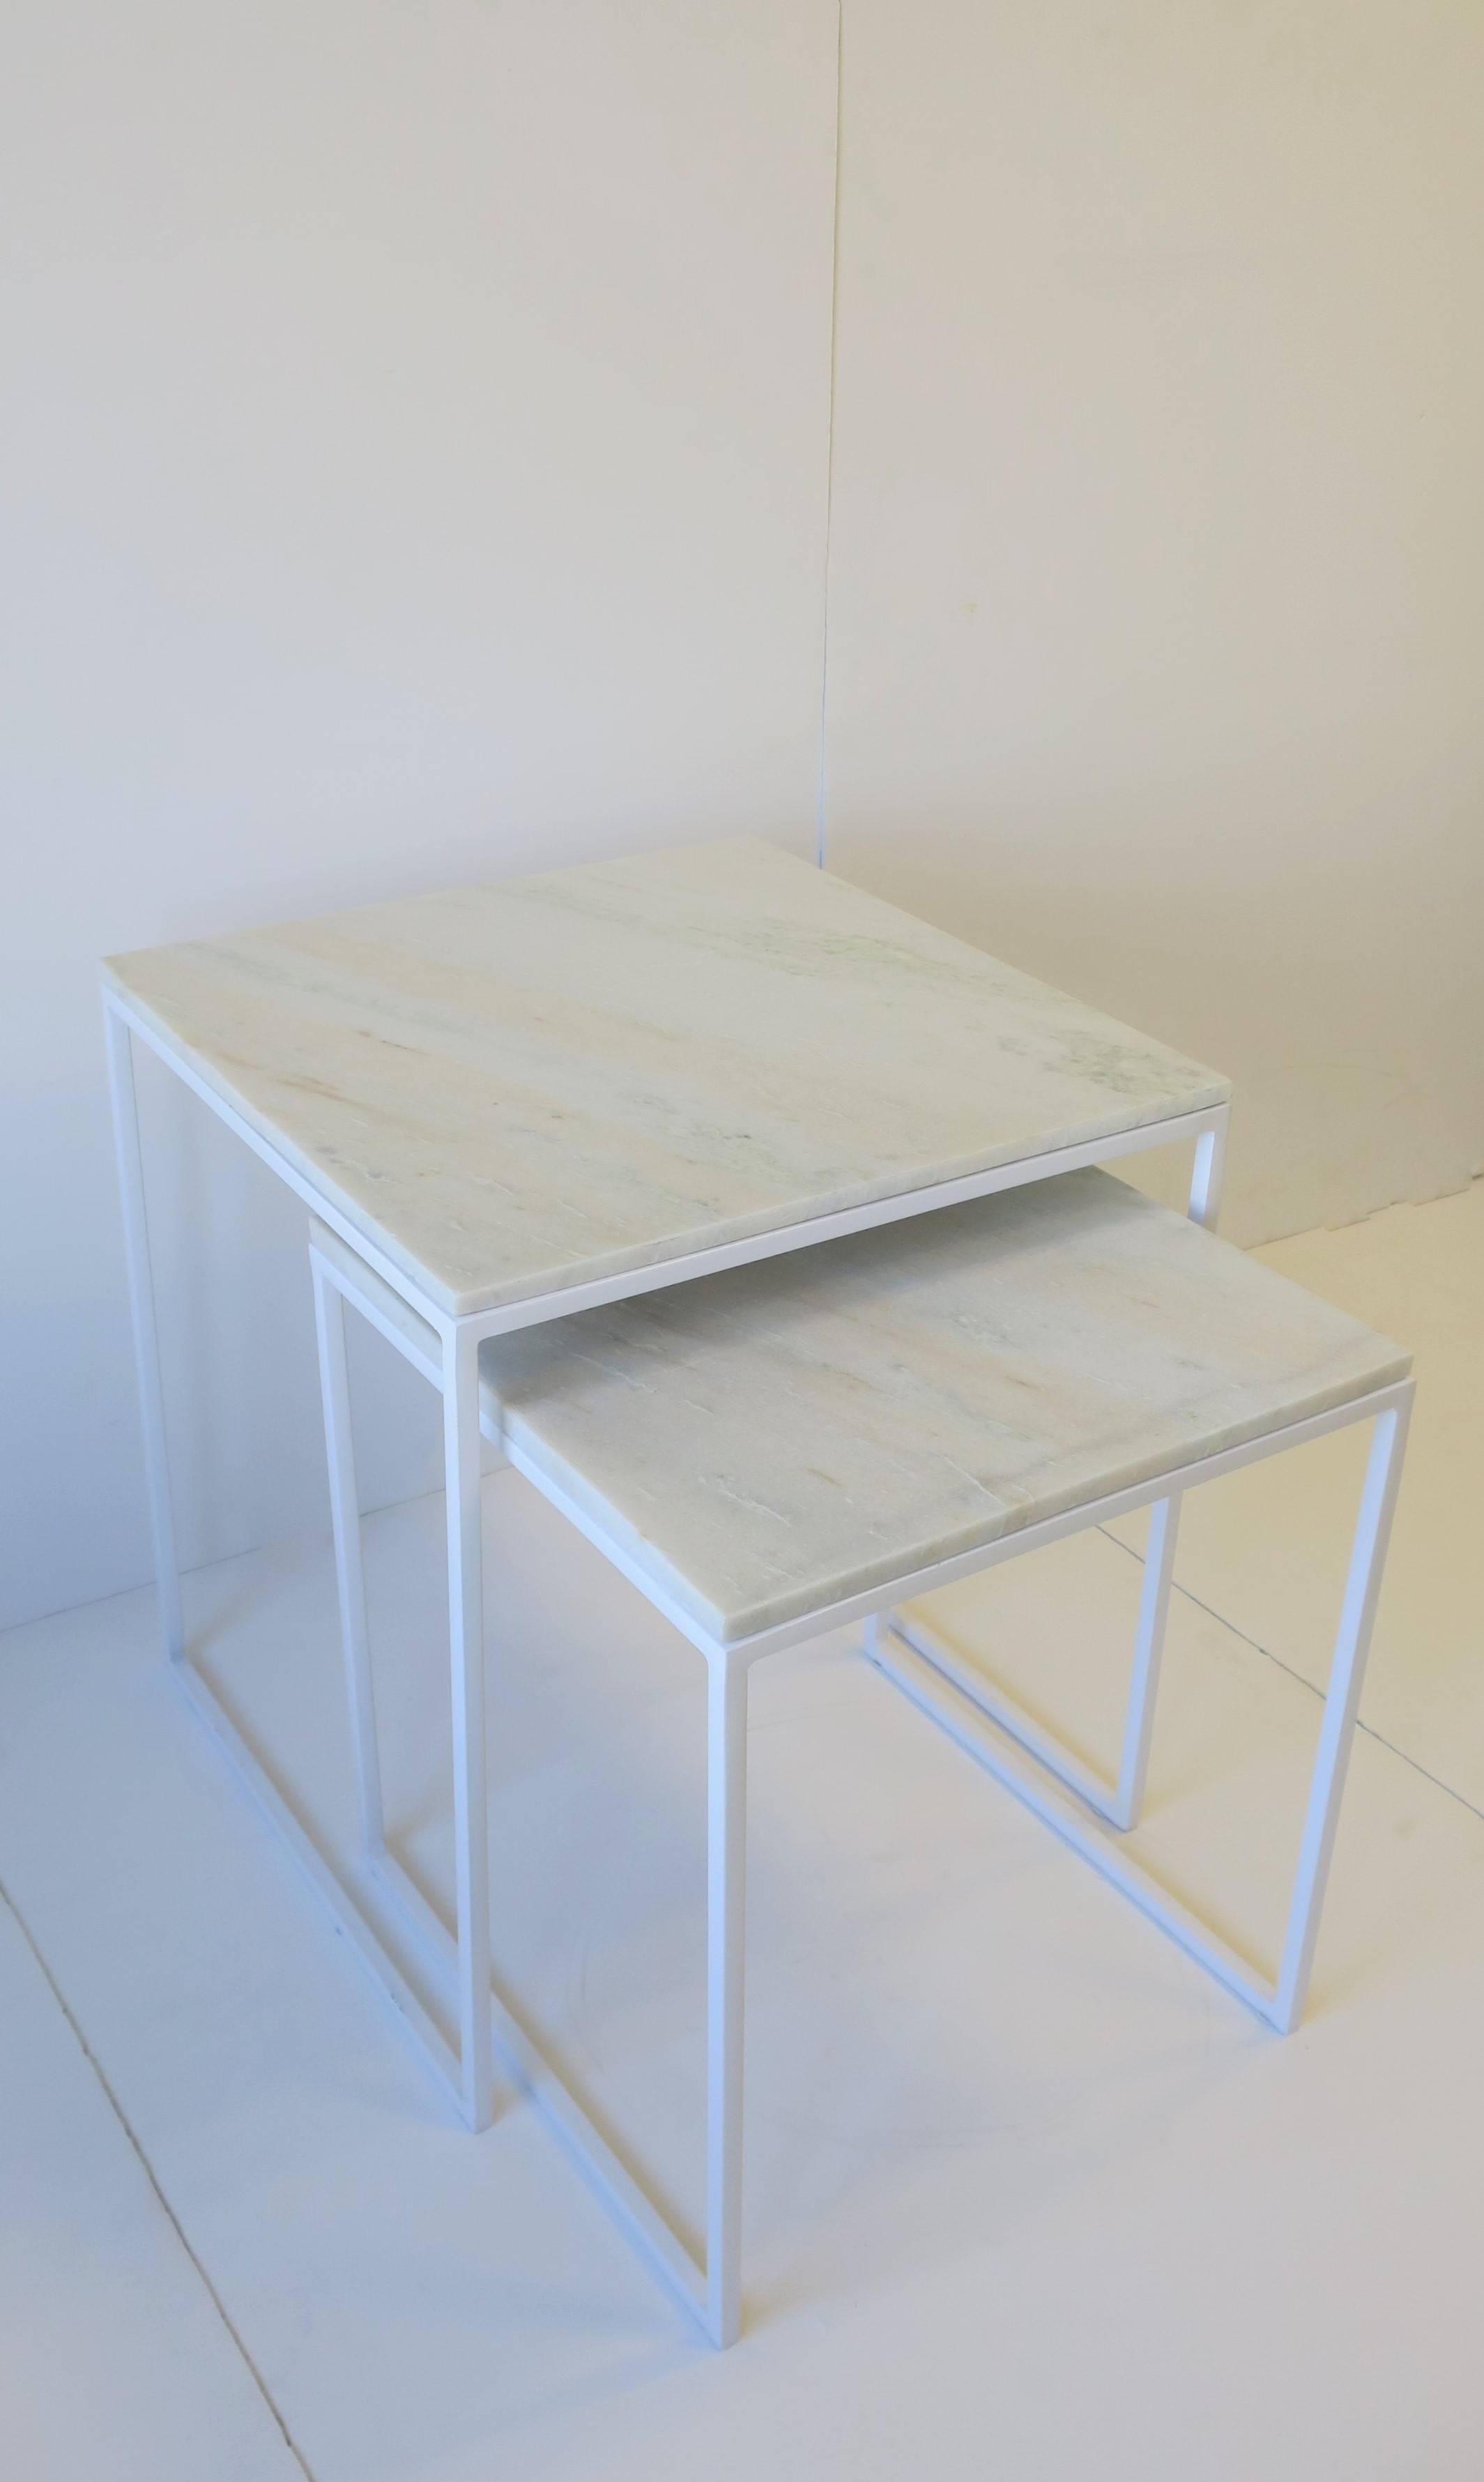 Ein Set/Paar moderner oder minimalistischer Tische aus weißem Granit und Marmor, die als Nist- oder Beistelltische dienen. Granitmarmor ist weiß mit leichten Spuren von Grau- und Fleischtönen, wie auf den Bildern zu sehen. Die Basis ist ein weißer